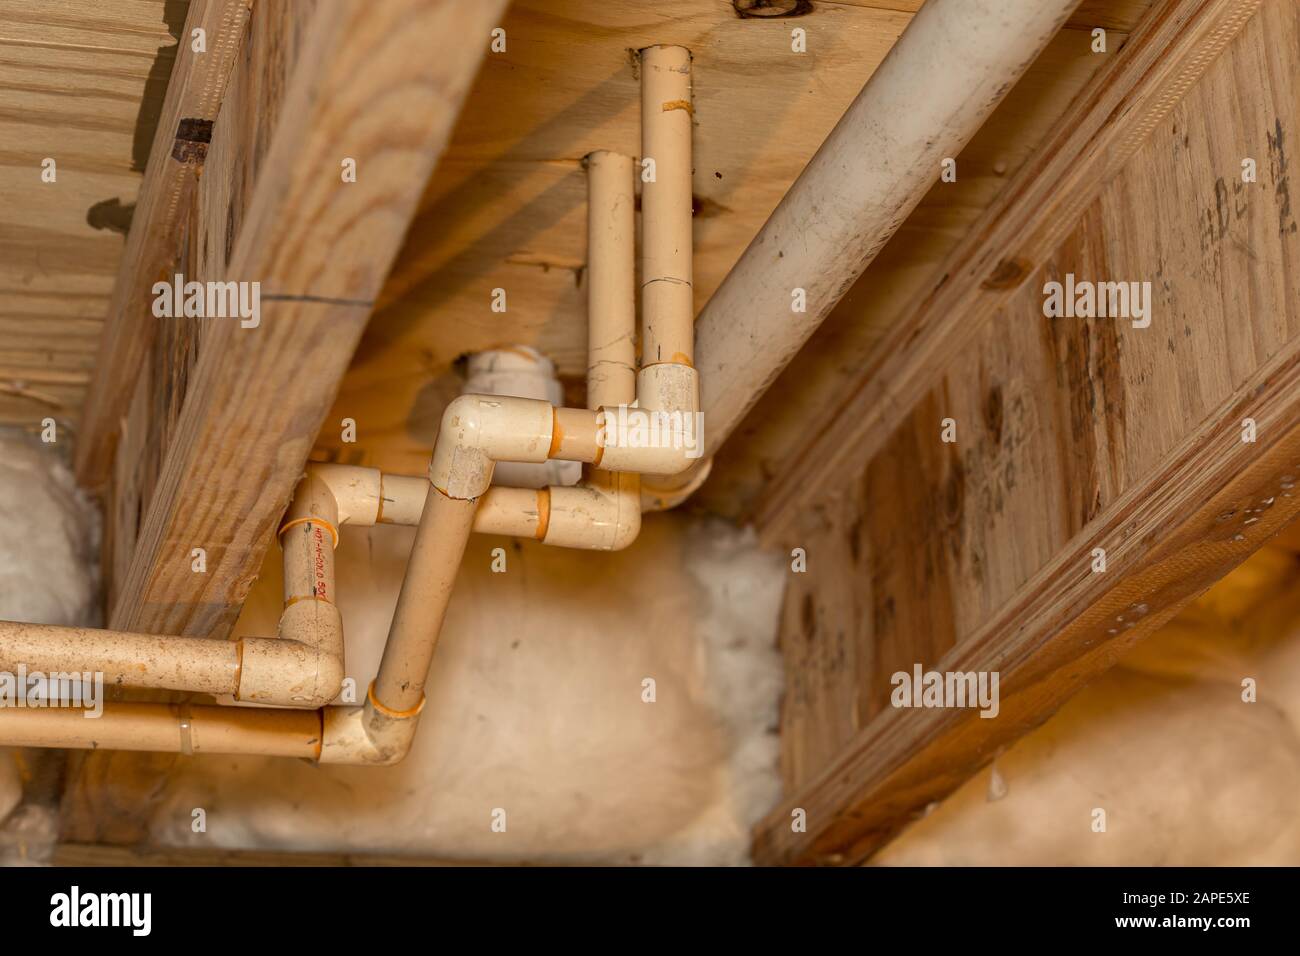 Anciens tuyaux d'alimentation en eau en plastique PVC installés sous la  maison dans un espace à chenilles. Système de plomberie d'eau chaude et  froide pour lavabo de salle de bains et douche